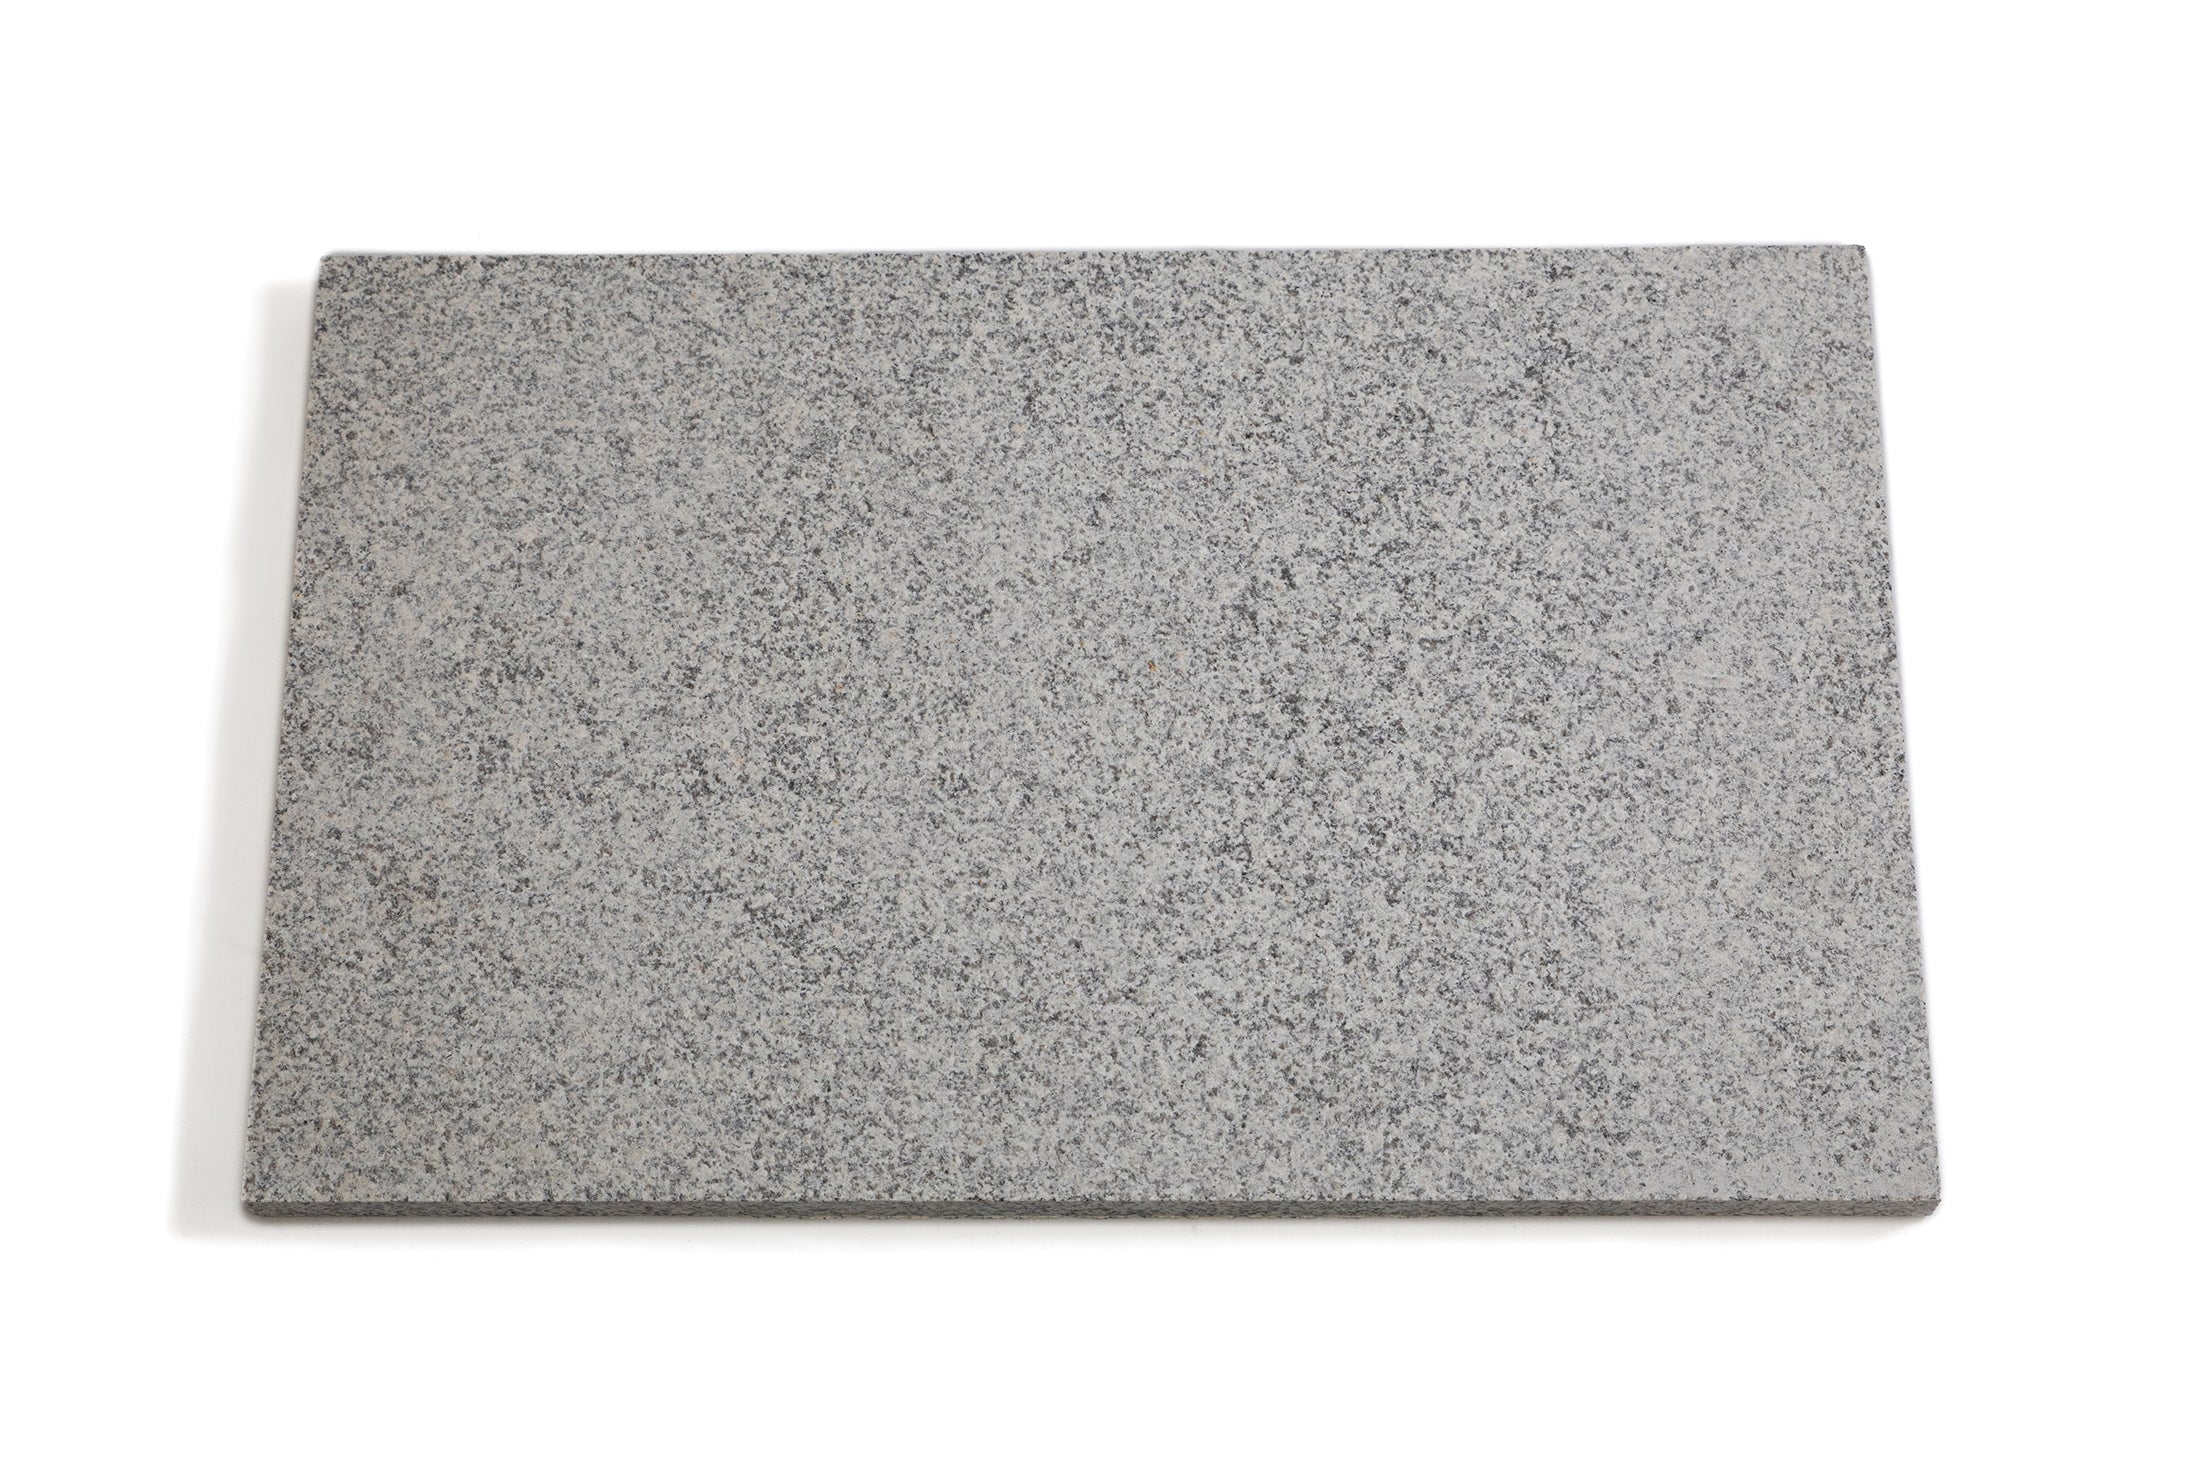 Granite Paver Stones 20mm